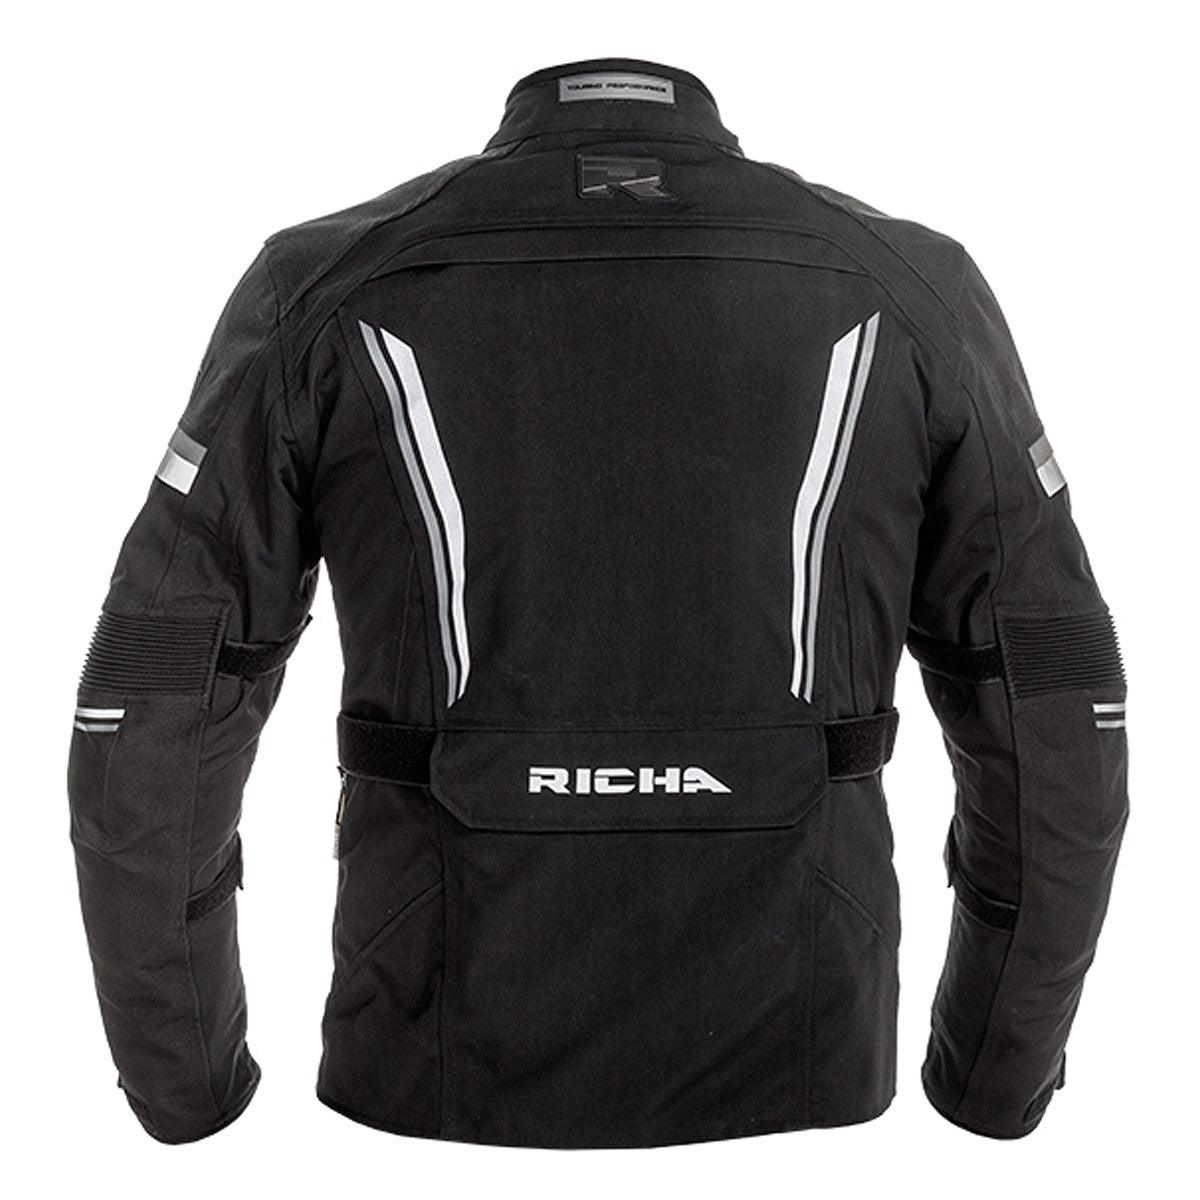 Richa Infinity 2 Pro Jacket WP Black - Motorcycle Clothing